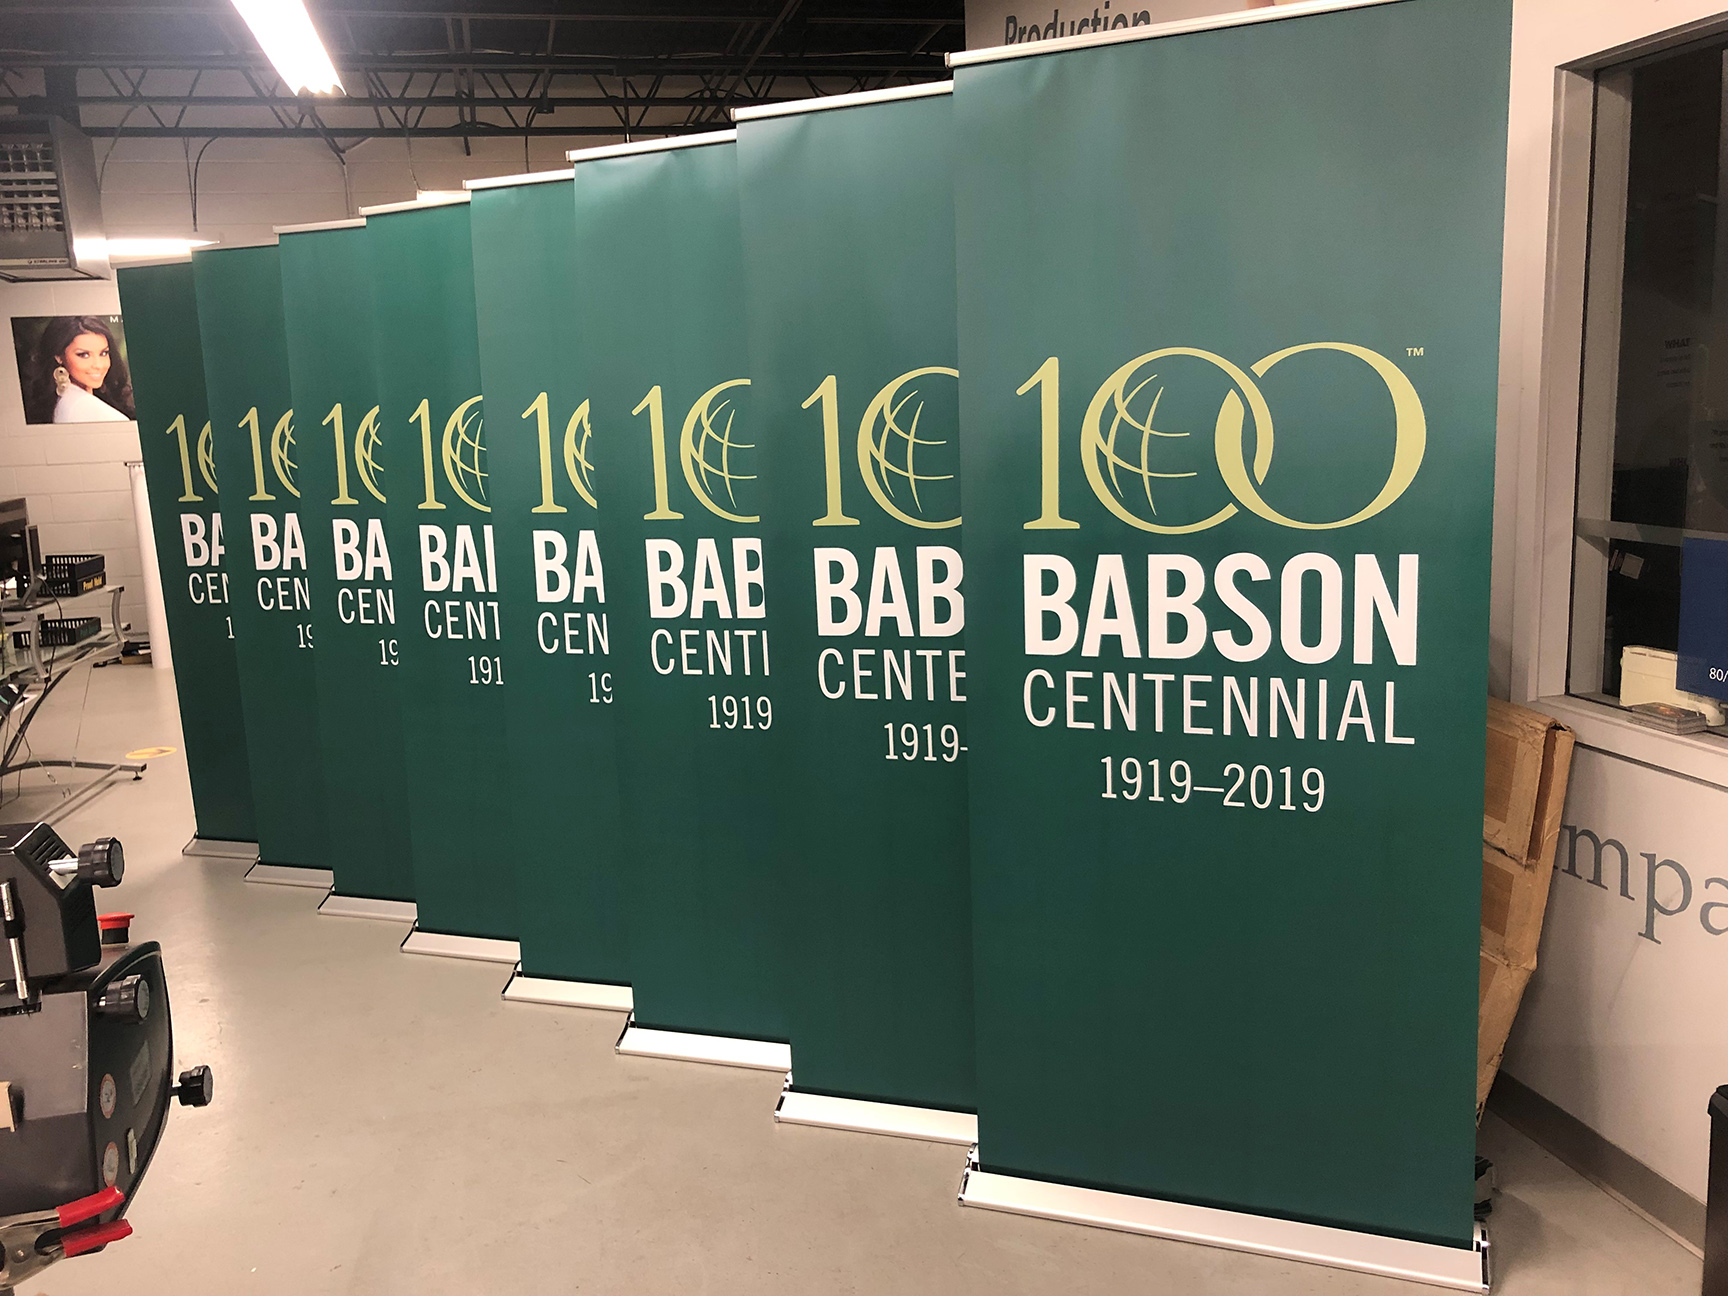 100 babson centennial banner